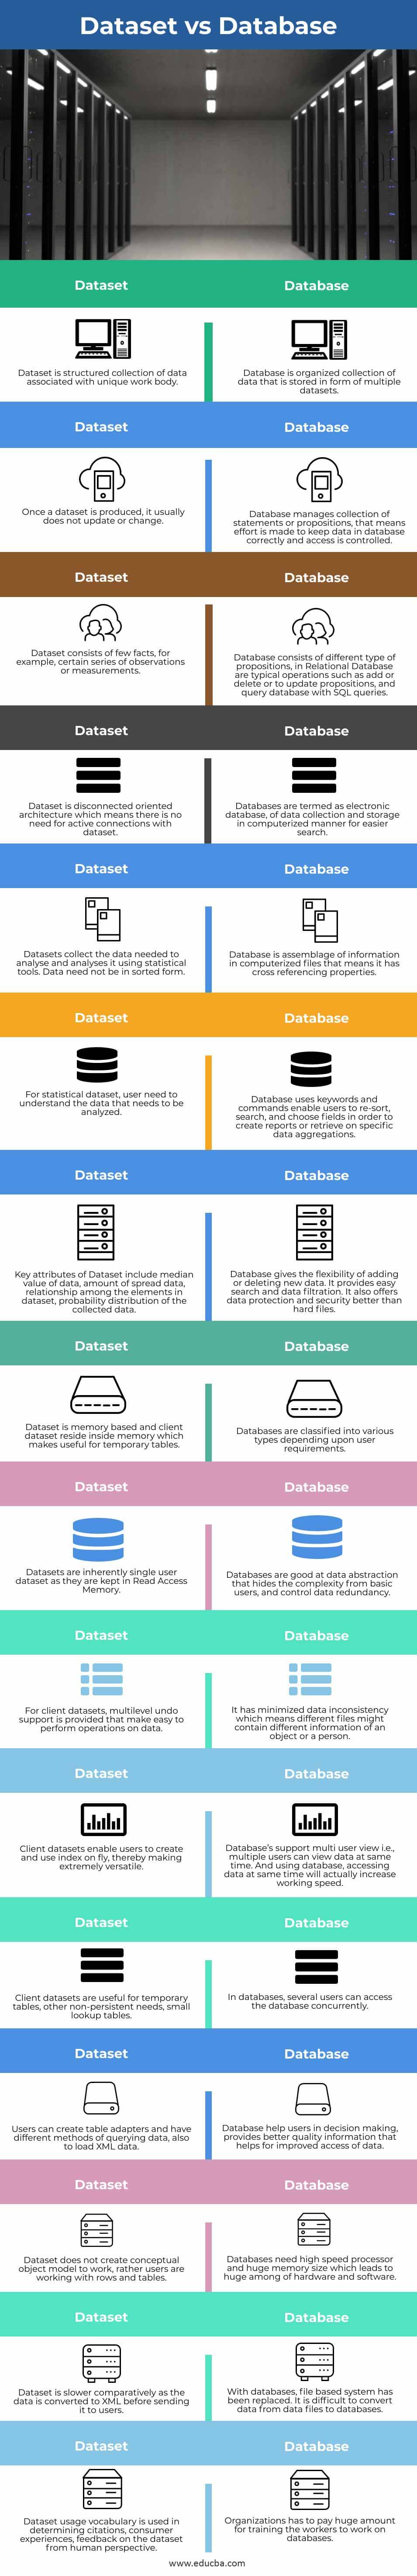 Dataset-vs-Database-info